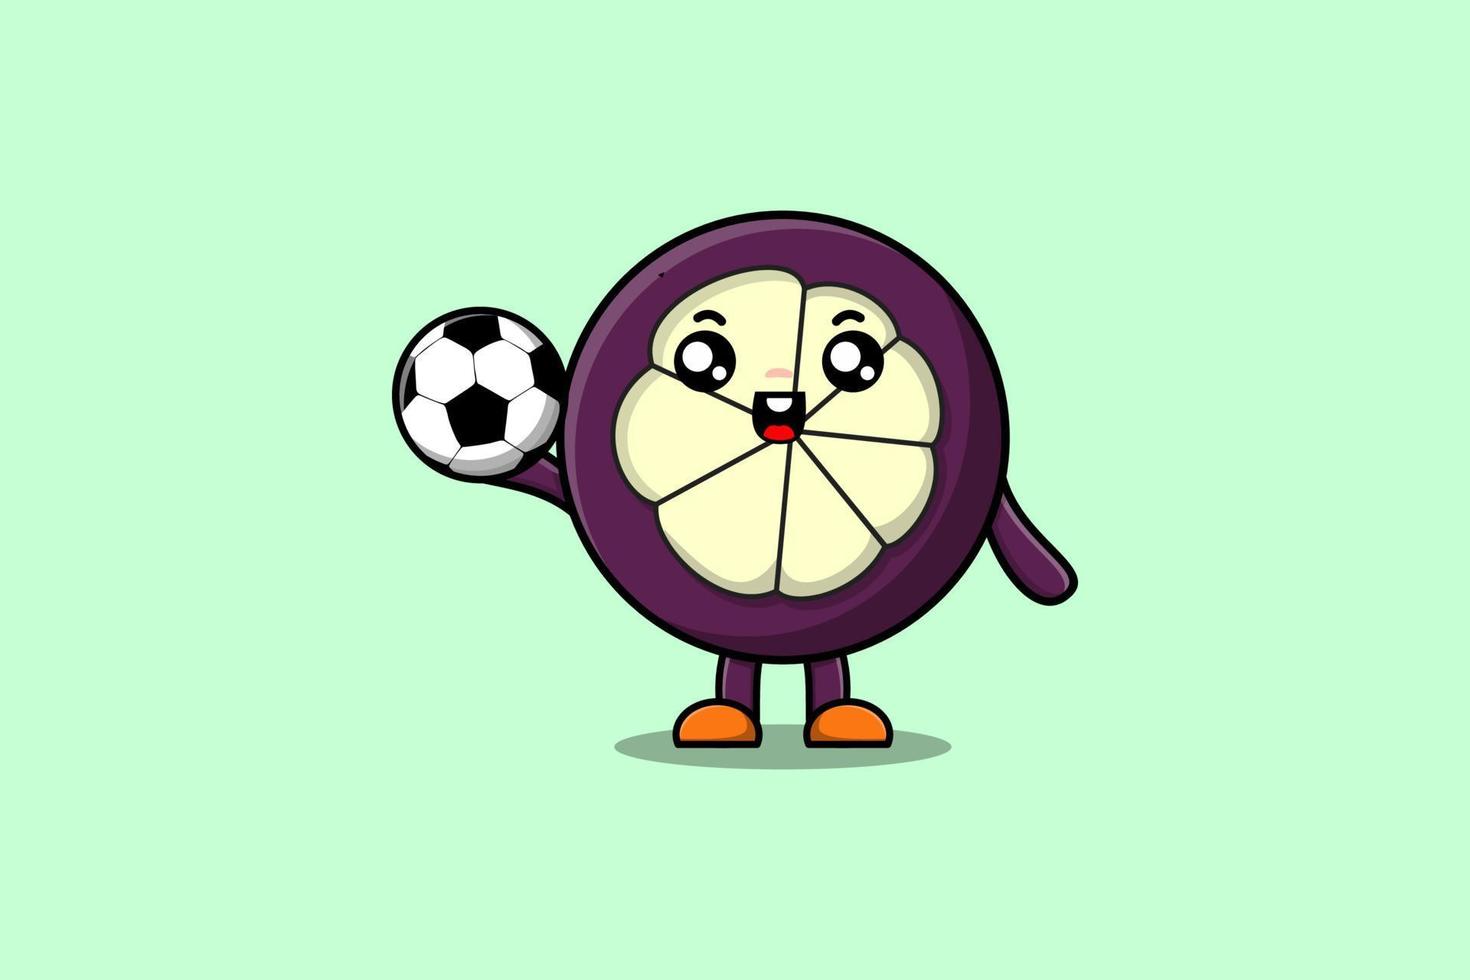 personnage de dessin animé mignon mangoustan jouant au football vecteur